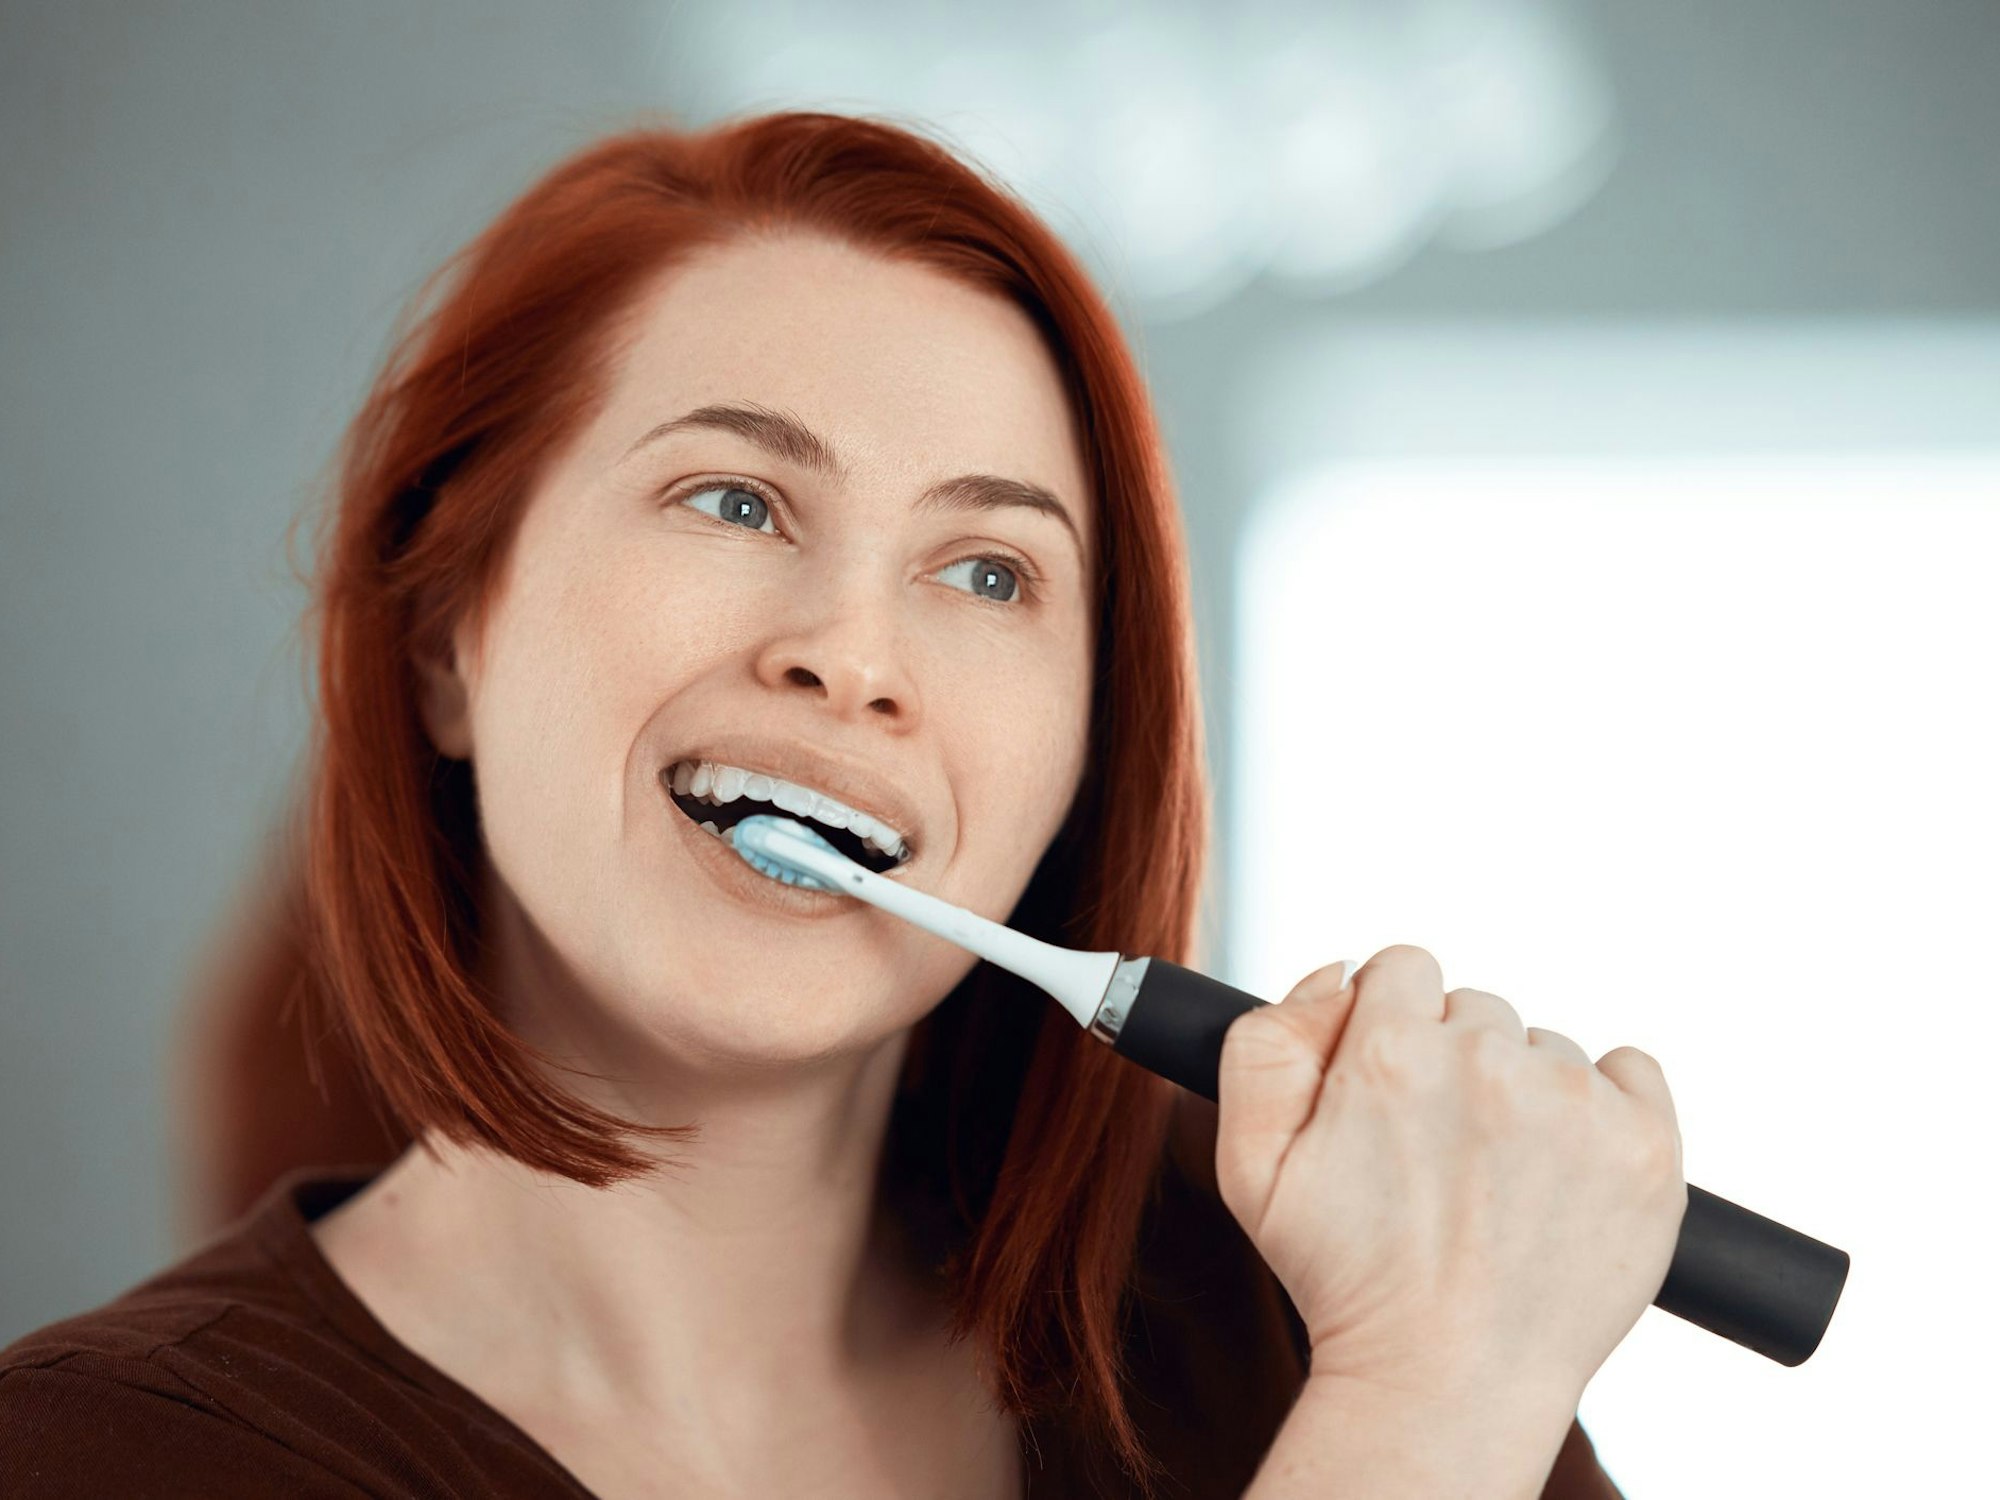 Auf dem Foto putzt sich eine rothaarige Frau die Zähne mit einer elektrischen Zahnbürste.